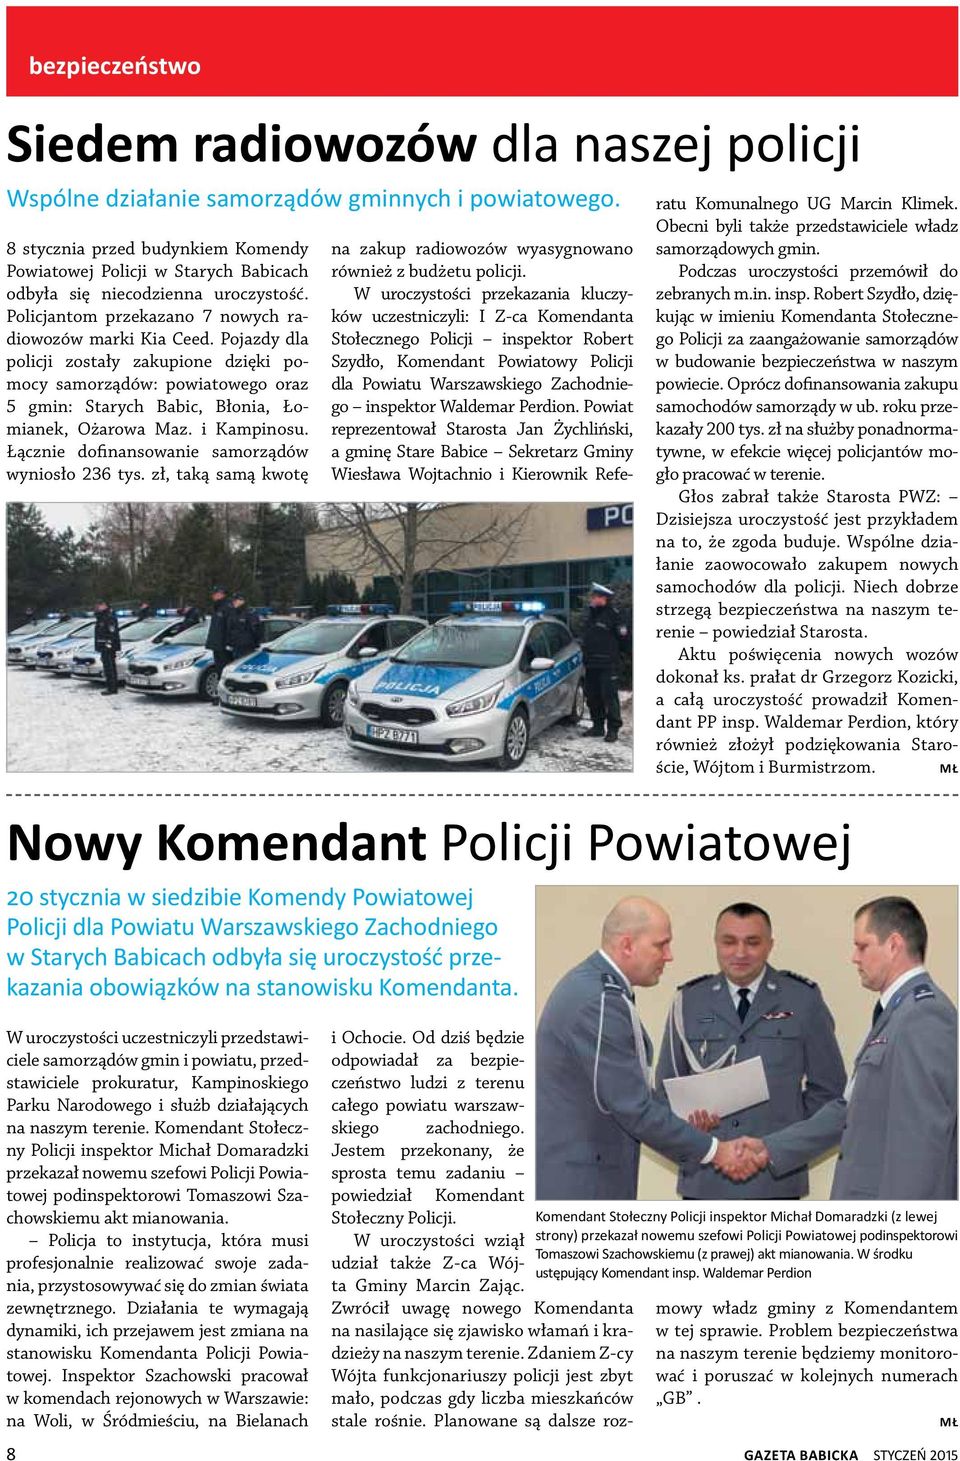 Pojazdy dla policji zostały zakupione dzięki pomocy samorządów: powiatowego oraz 5 gmin: Starych Babic, Błonia, Łomianek, Ożarowa Maz. i Kampinosu. Łącznie dofinansowanie samorządów wyniosło 236 tys.